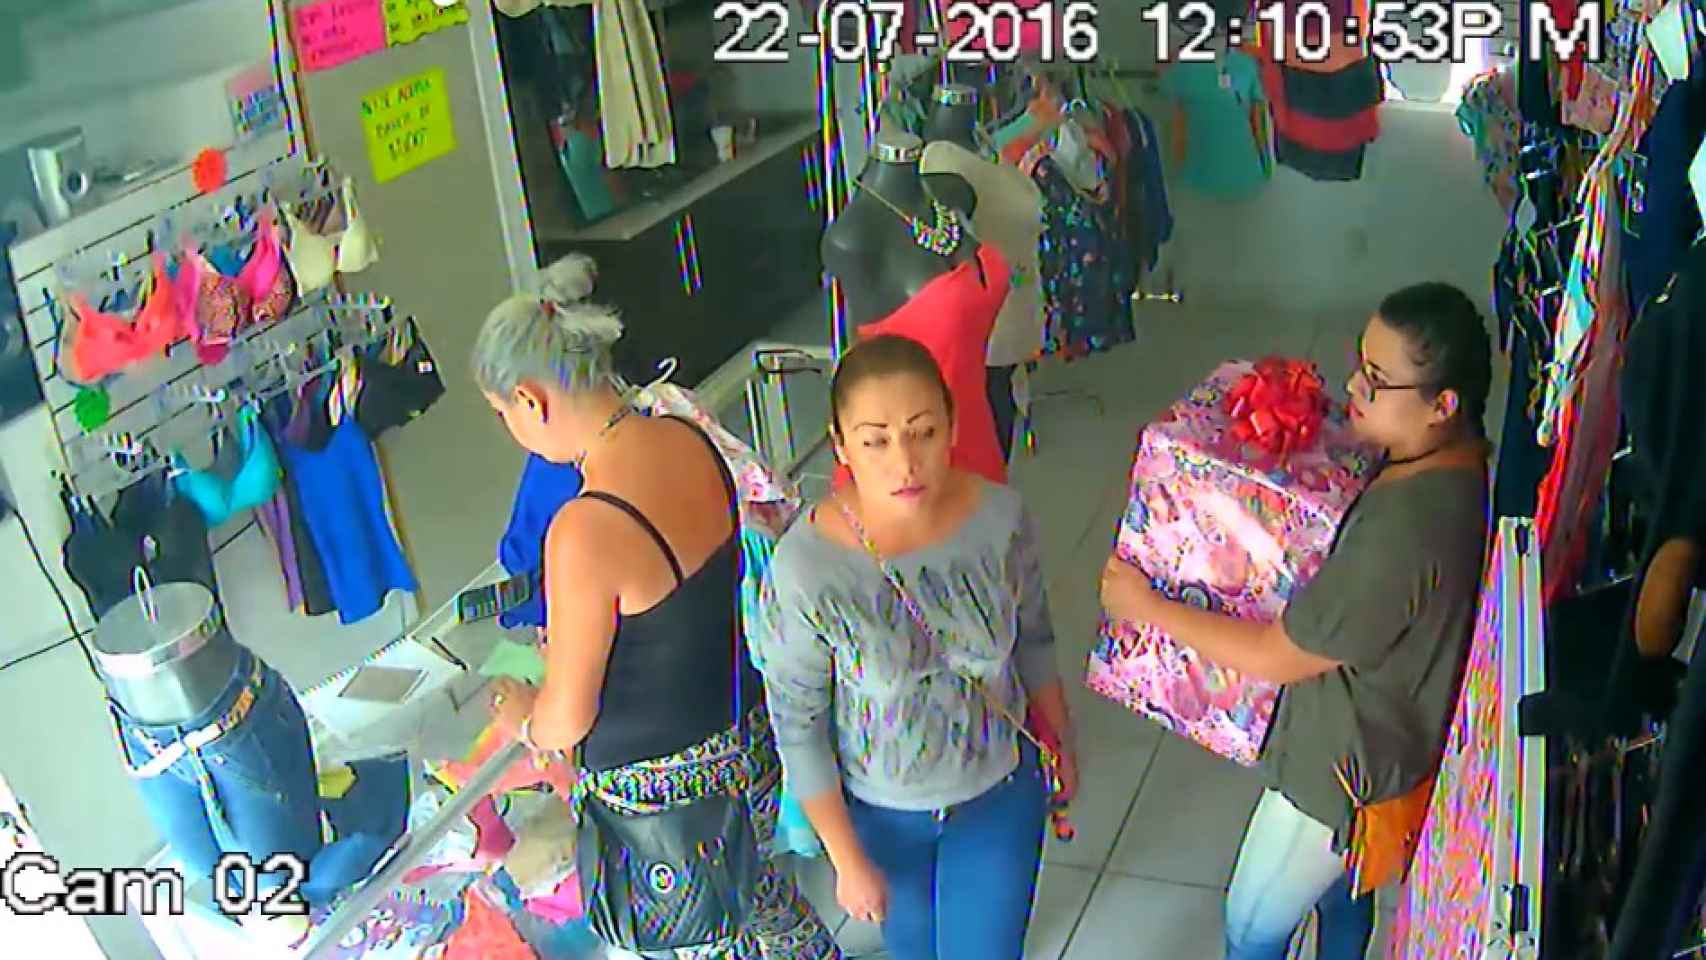 Ladrones robando en una tienda